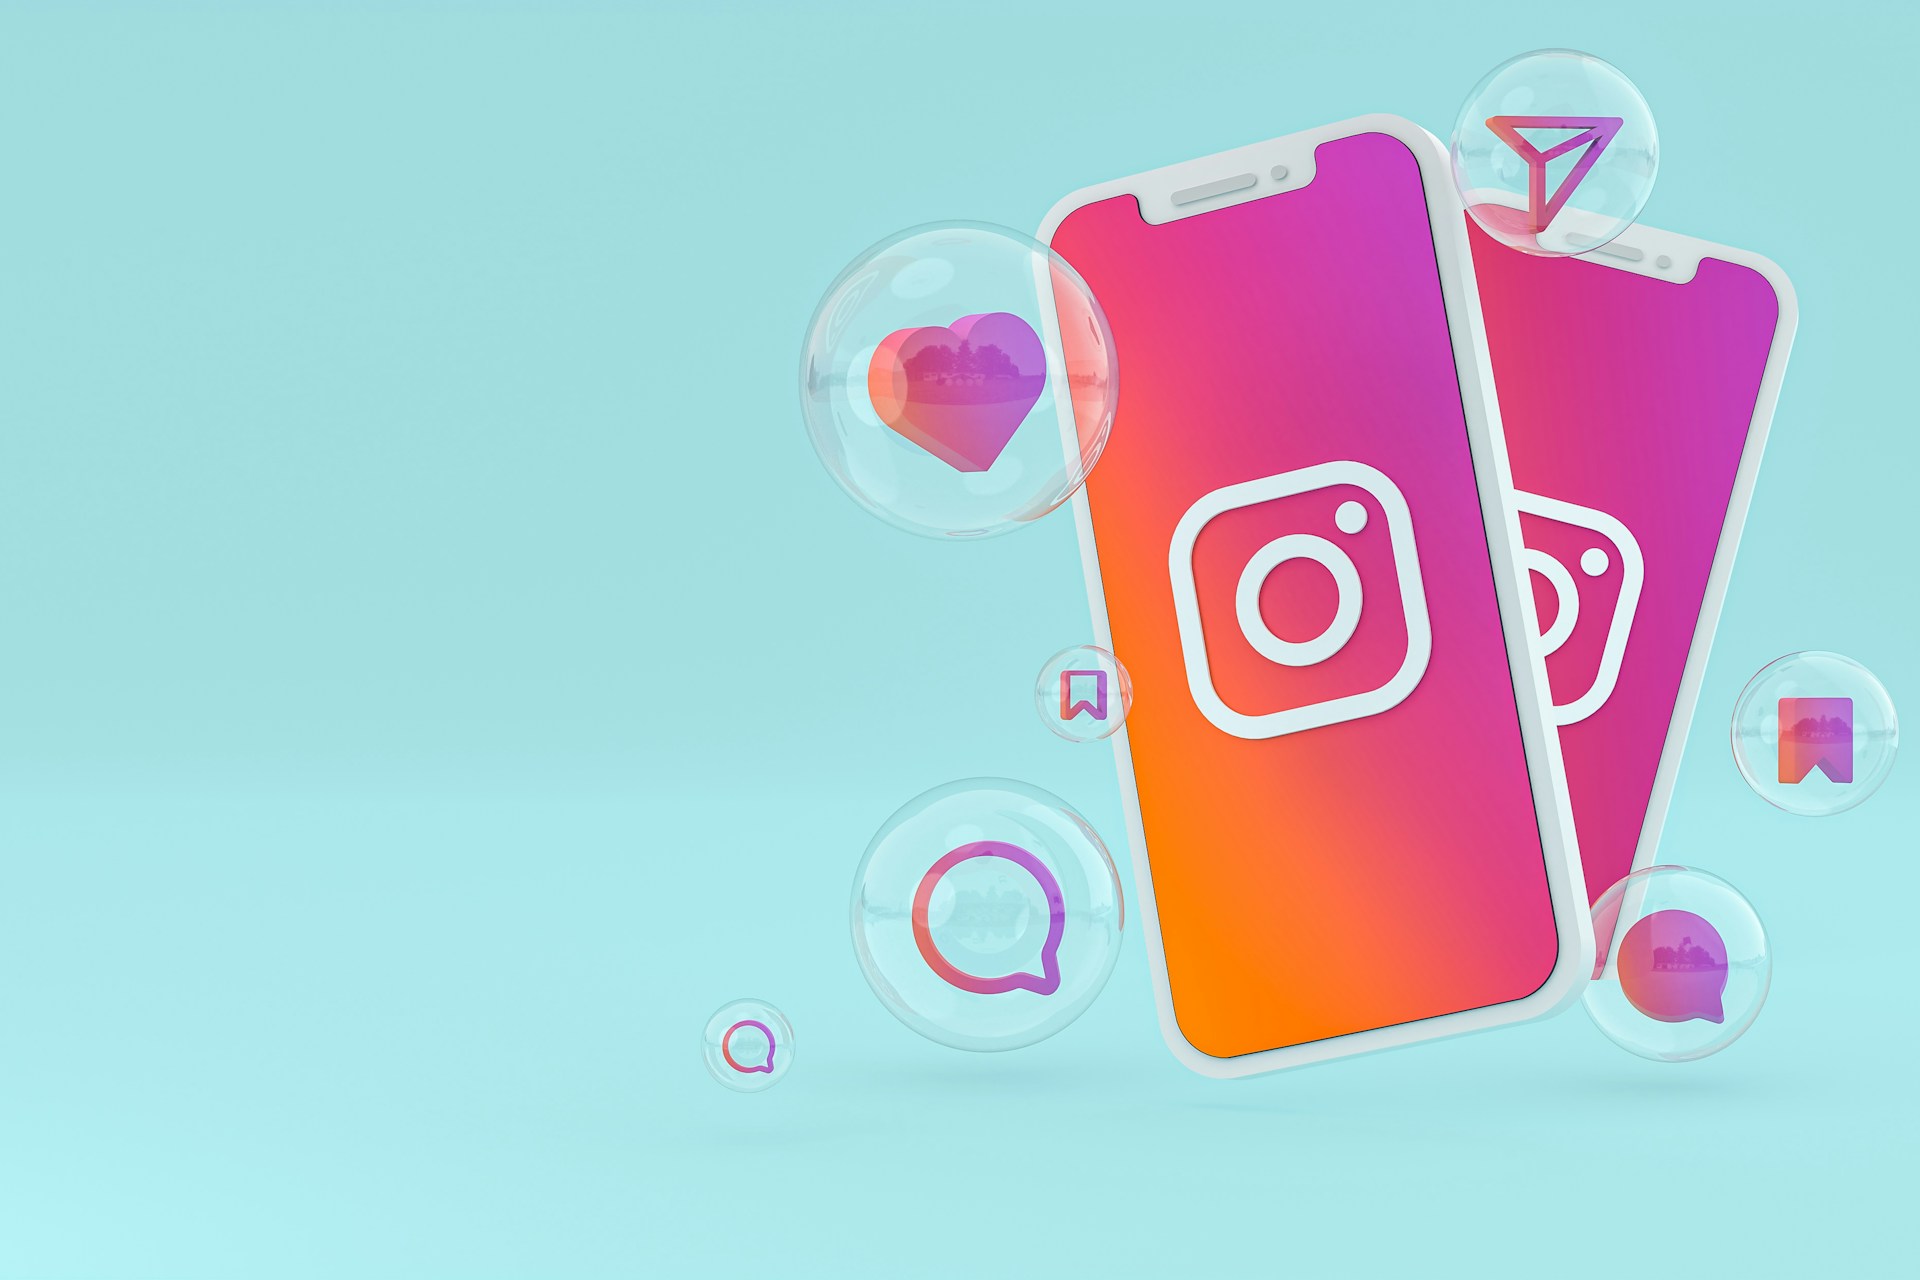 Hellblauer Hintergrund, 2 Iphones mit dem Instagram Logo und rot/orangenen Hintergrund, verschiedene Icons in Blasen um die Iphones